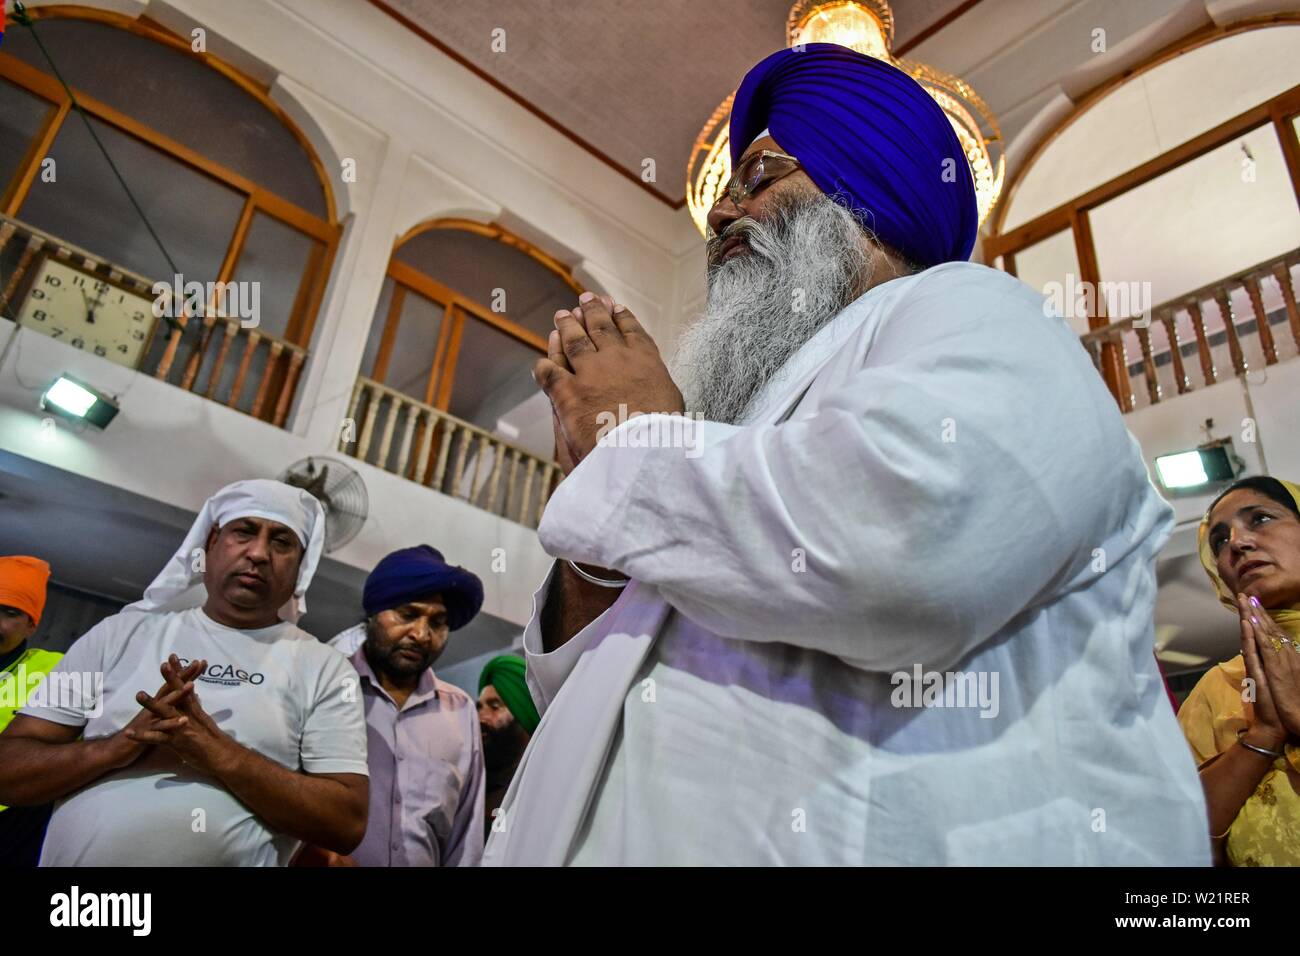 Les dévots prient à un temple Sikh lors d'un anniversaire de naissance de la sixième gourou, Hargobind Singh à Srinagar.Les Sikhs dans tout le pays célèbrent l'anniversaire de la naissance de leur sixième gourou, Hargobind Singh, vendredi. La célébration a eu lieu en grande pompe et montrer à un temple Sikh principal ici à Srinagar. Banque D'Images